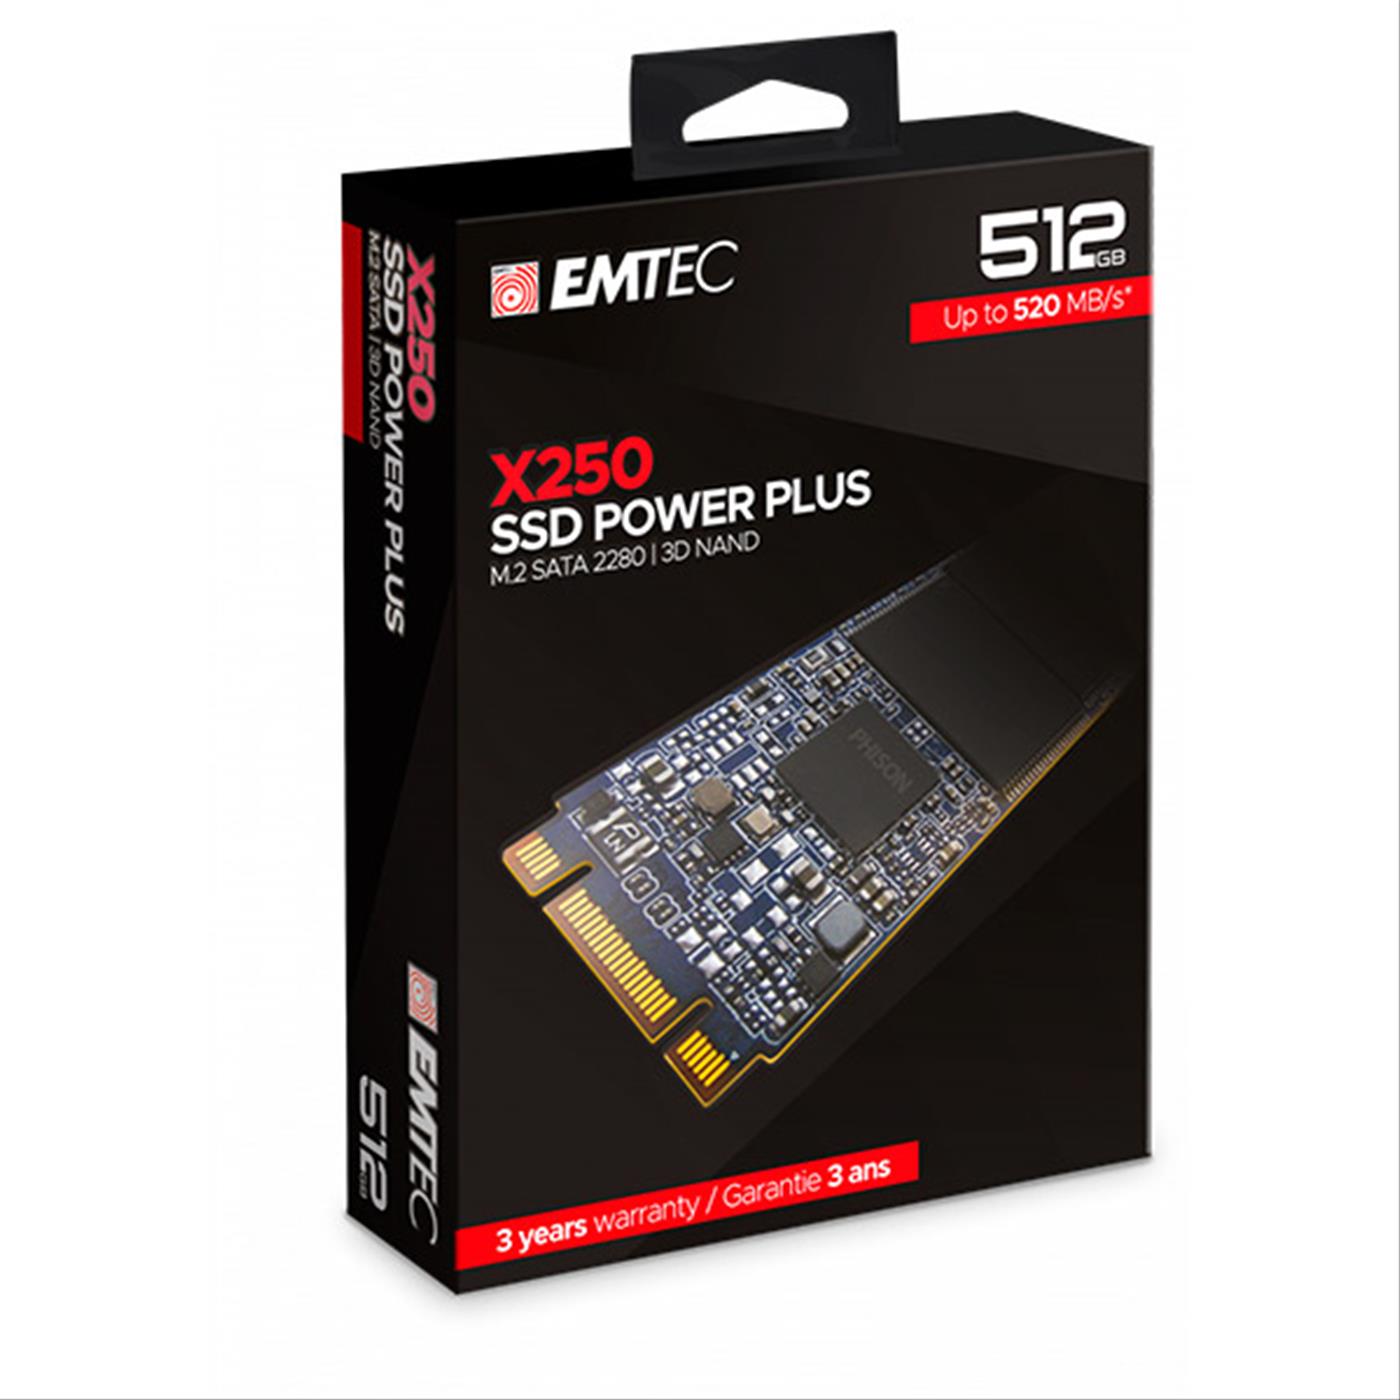 SSD M2 2280 512GB EMTEC POWER PLUS X250 SATA 500GB 